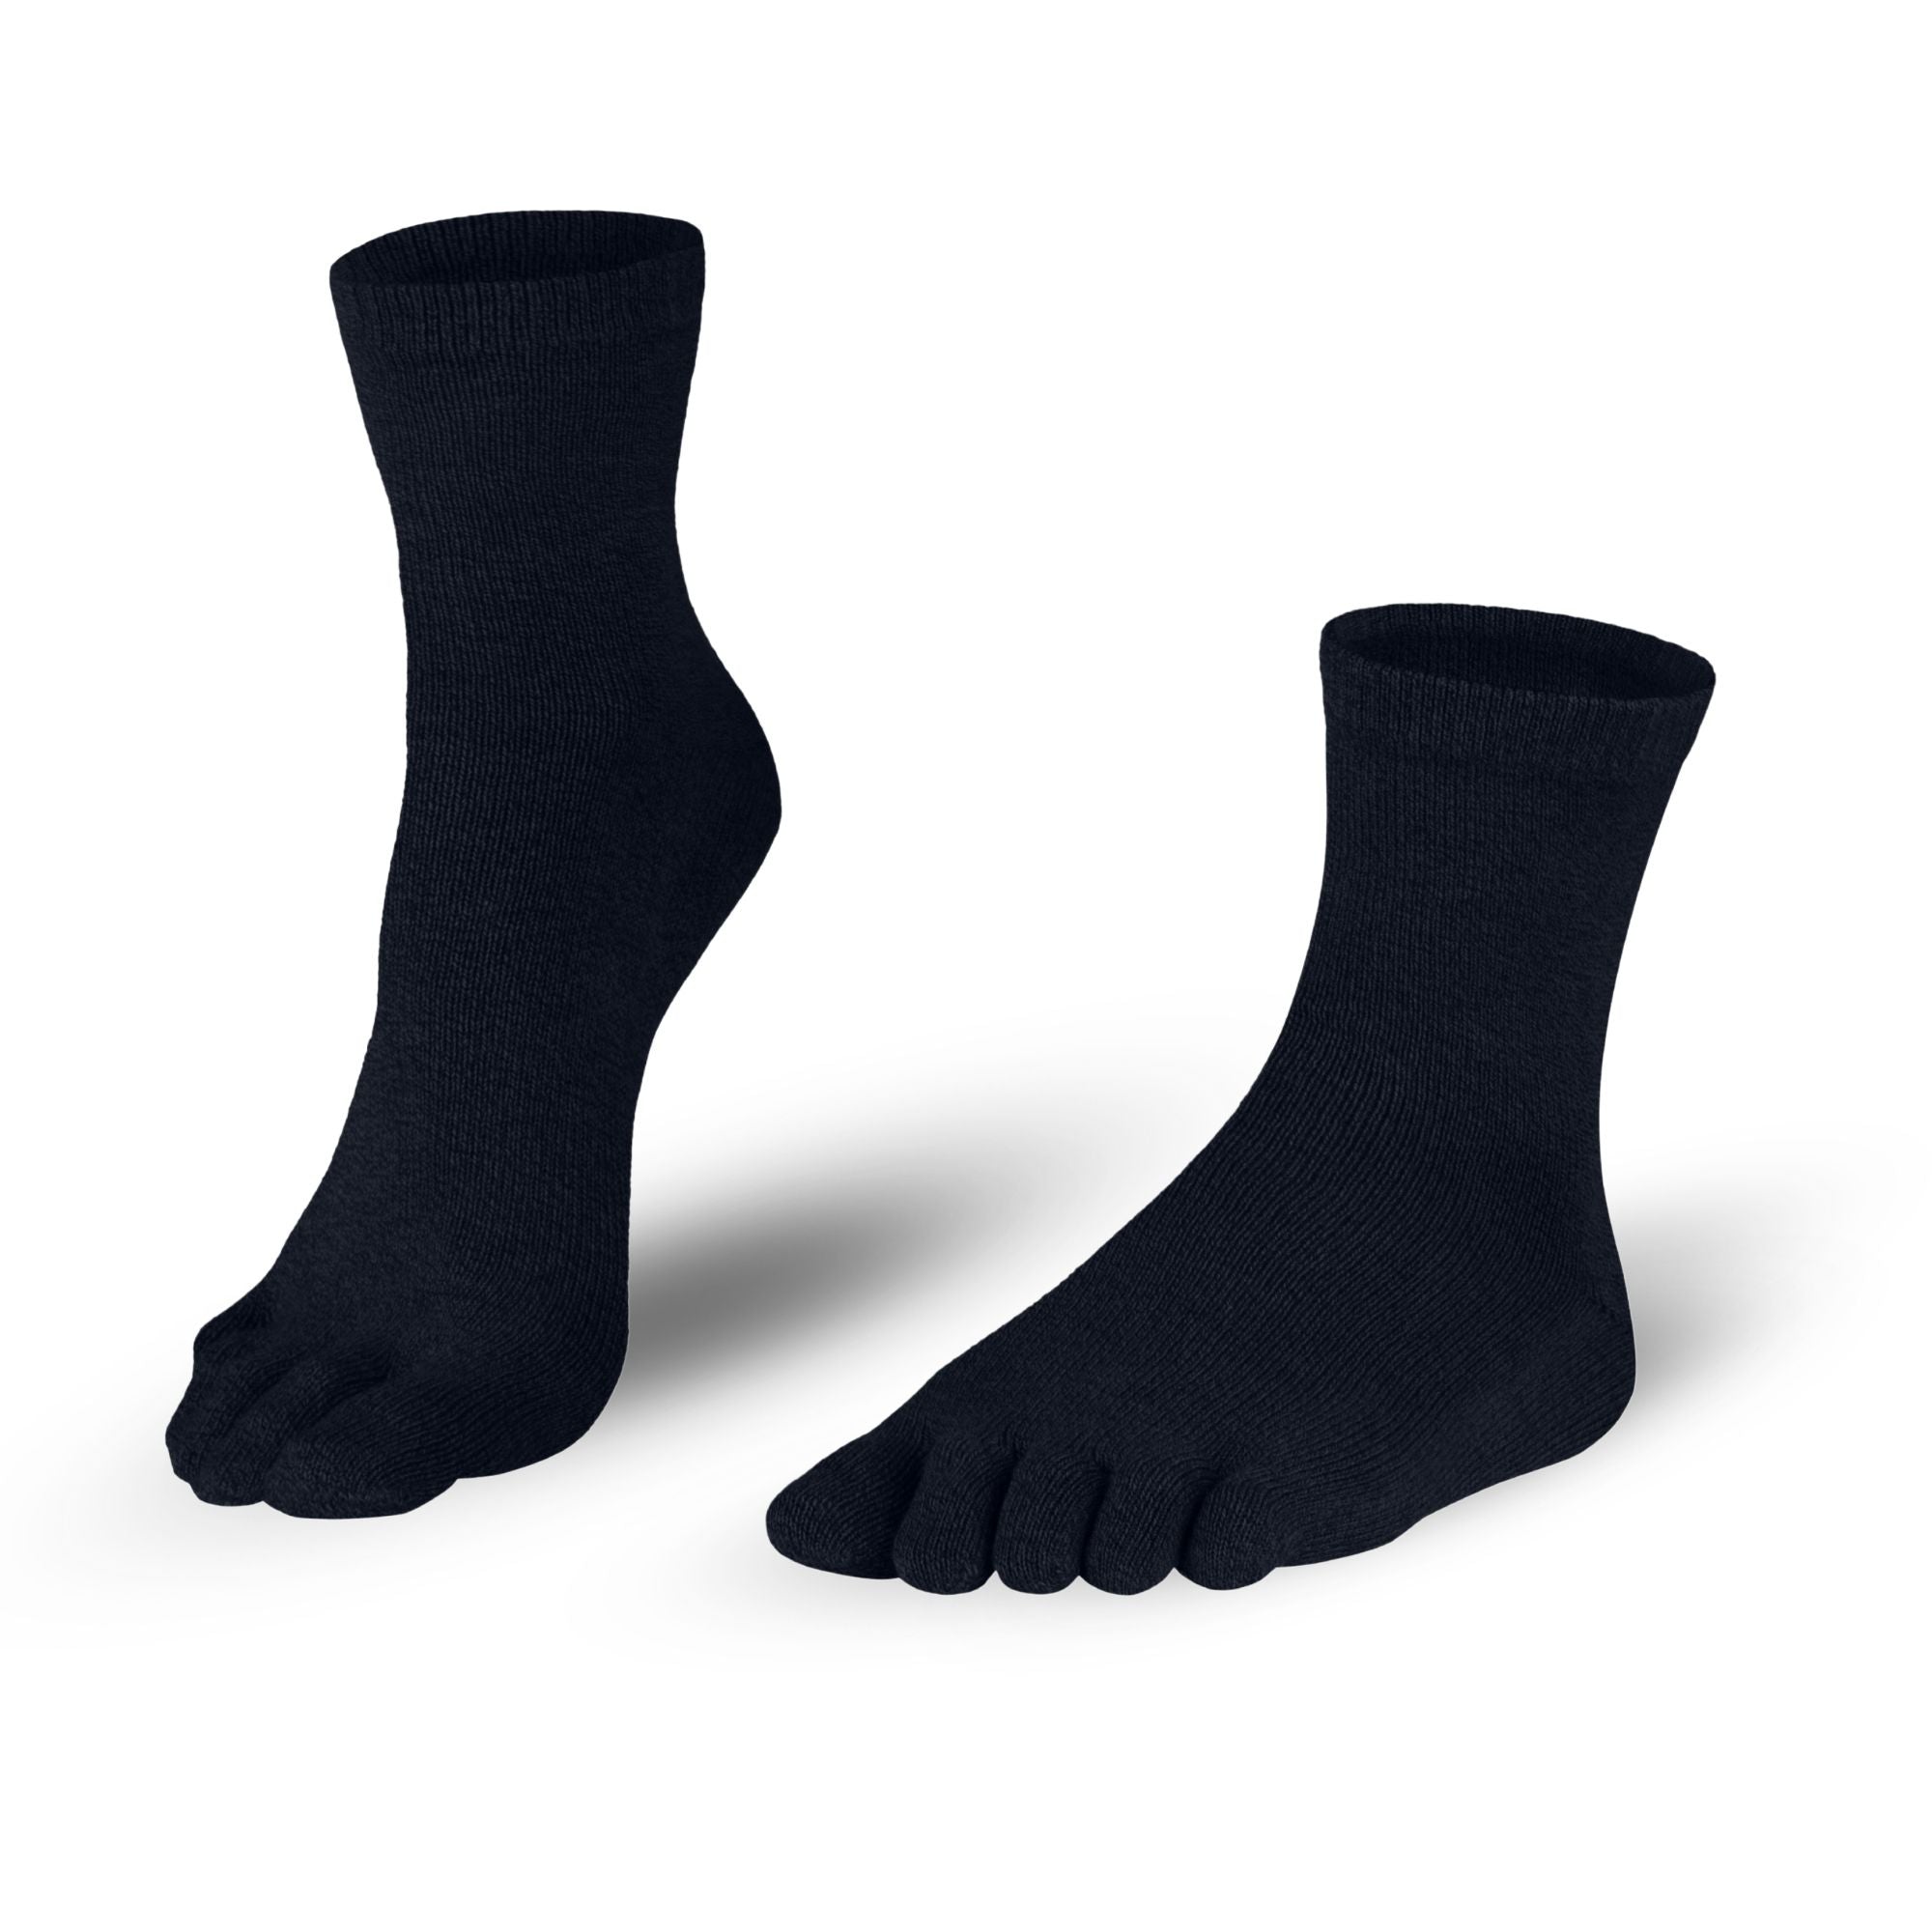 Chaussettes en cotonchaussettes à orteils en noir pour femmes et hommes